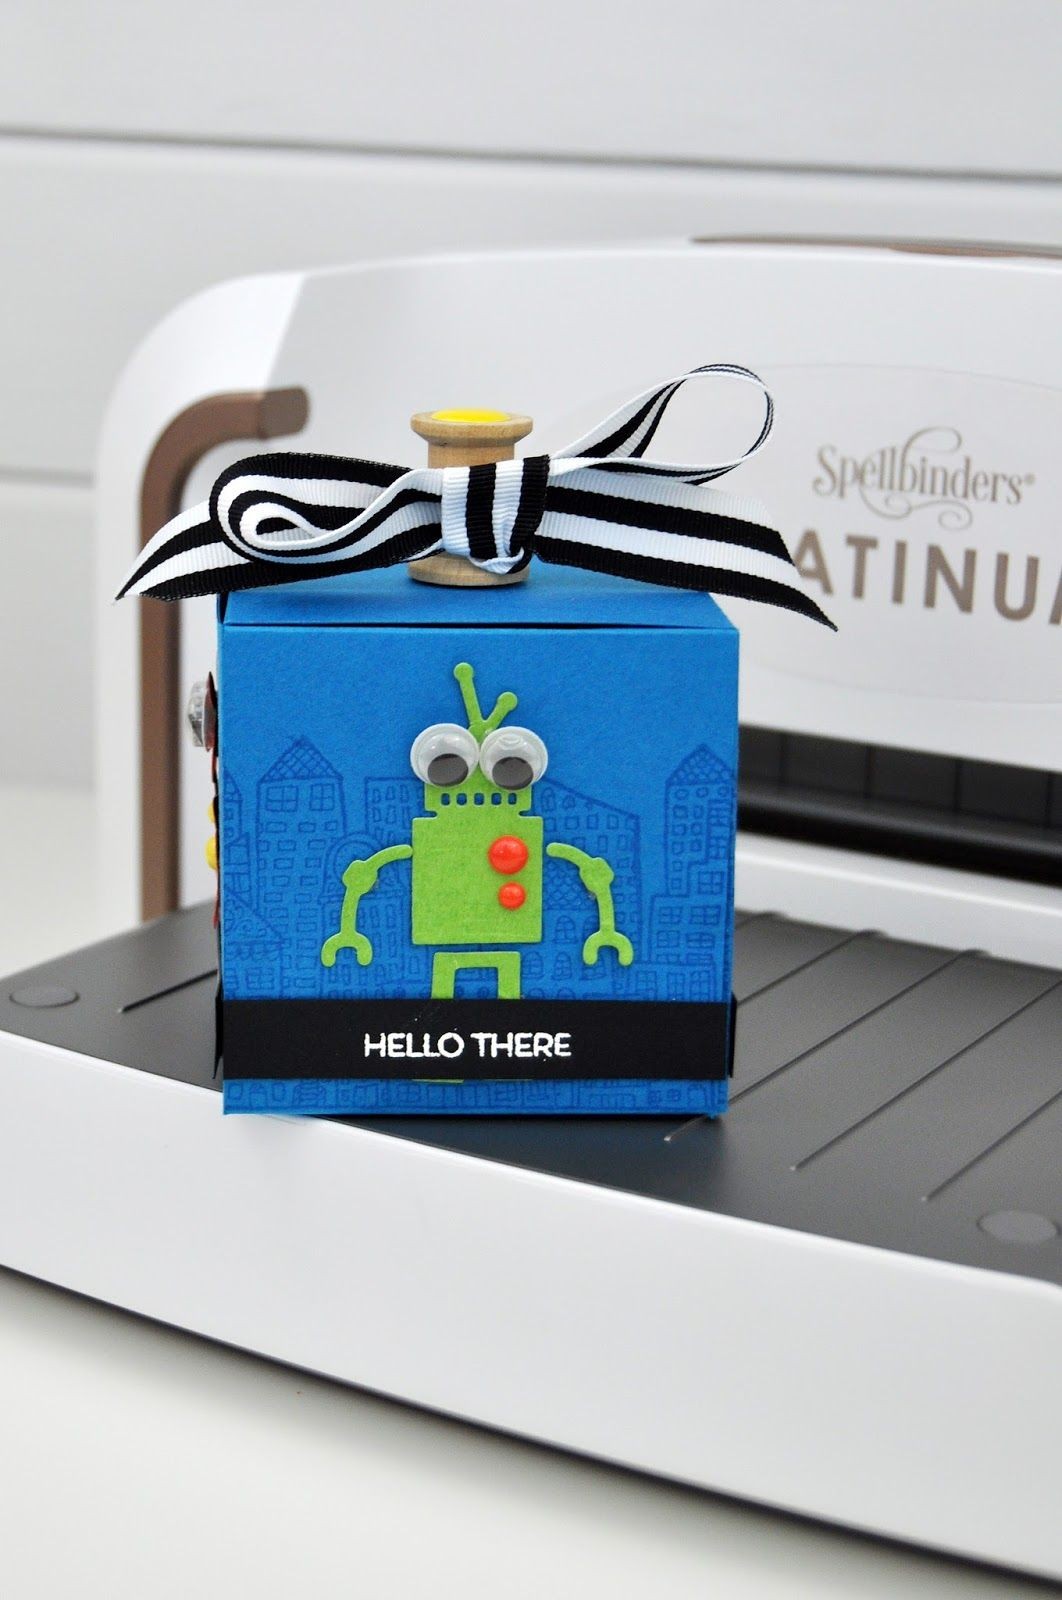 Papercraft Gifts Spellbinders Robot Gift Box Paper Craft Ideas Pinterest